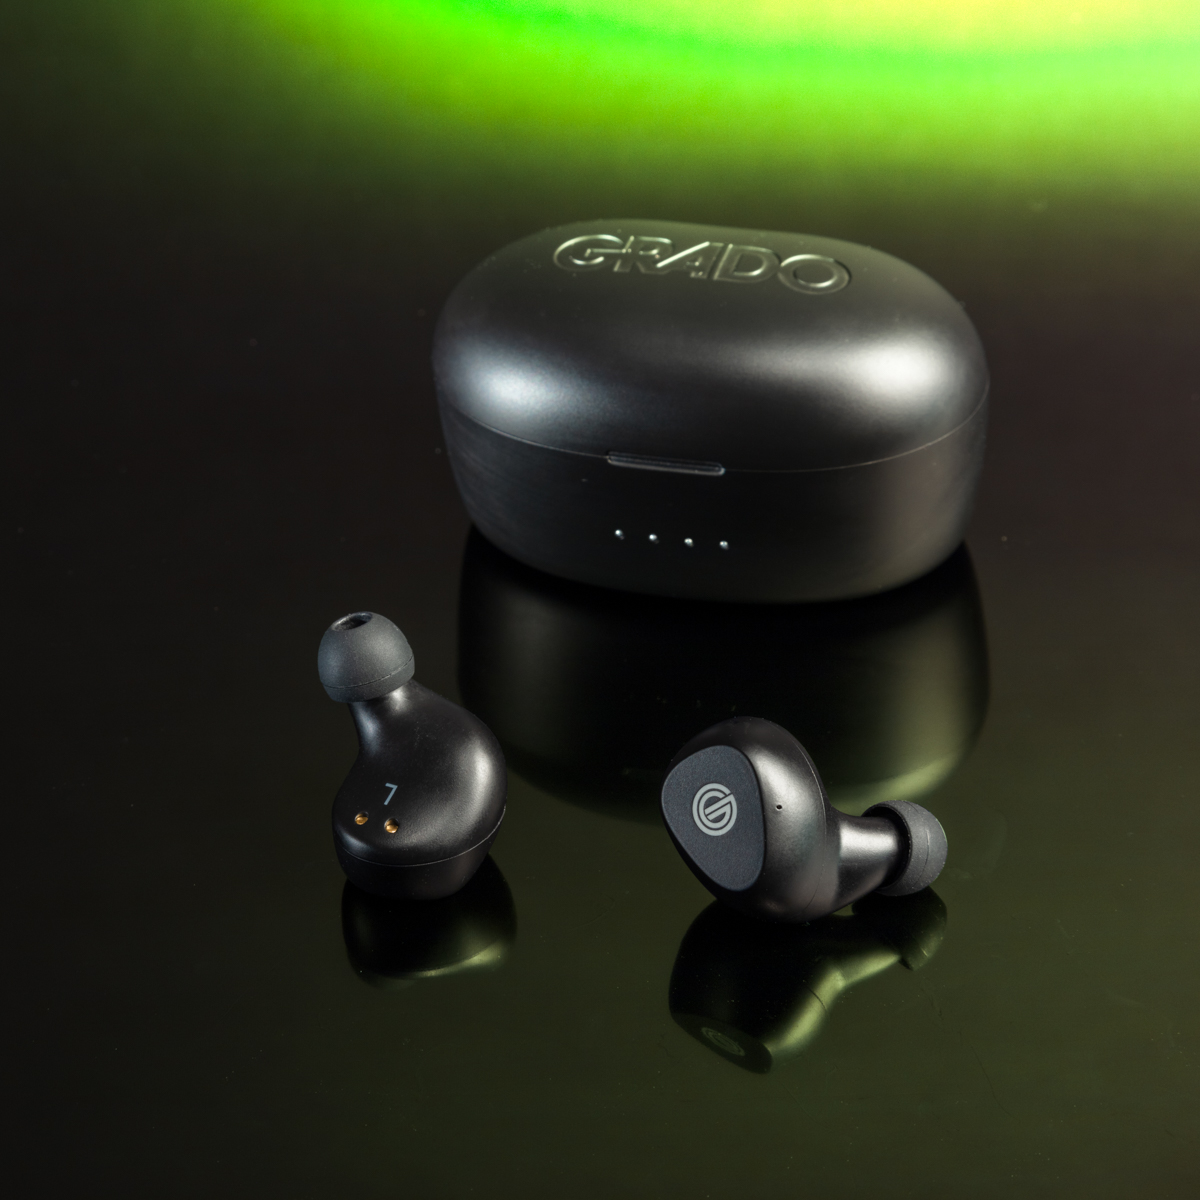 Grado Labs GT220 True Wireless Stereo earbuds